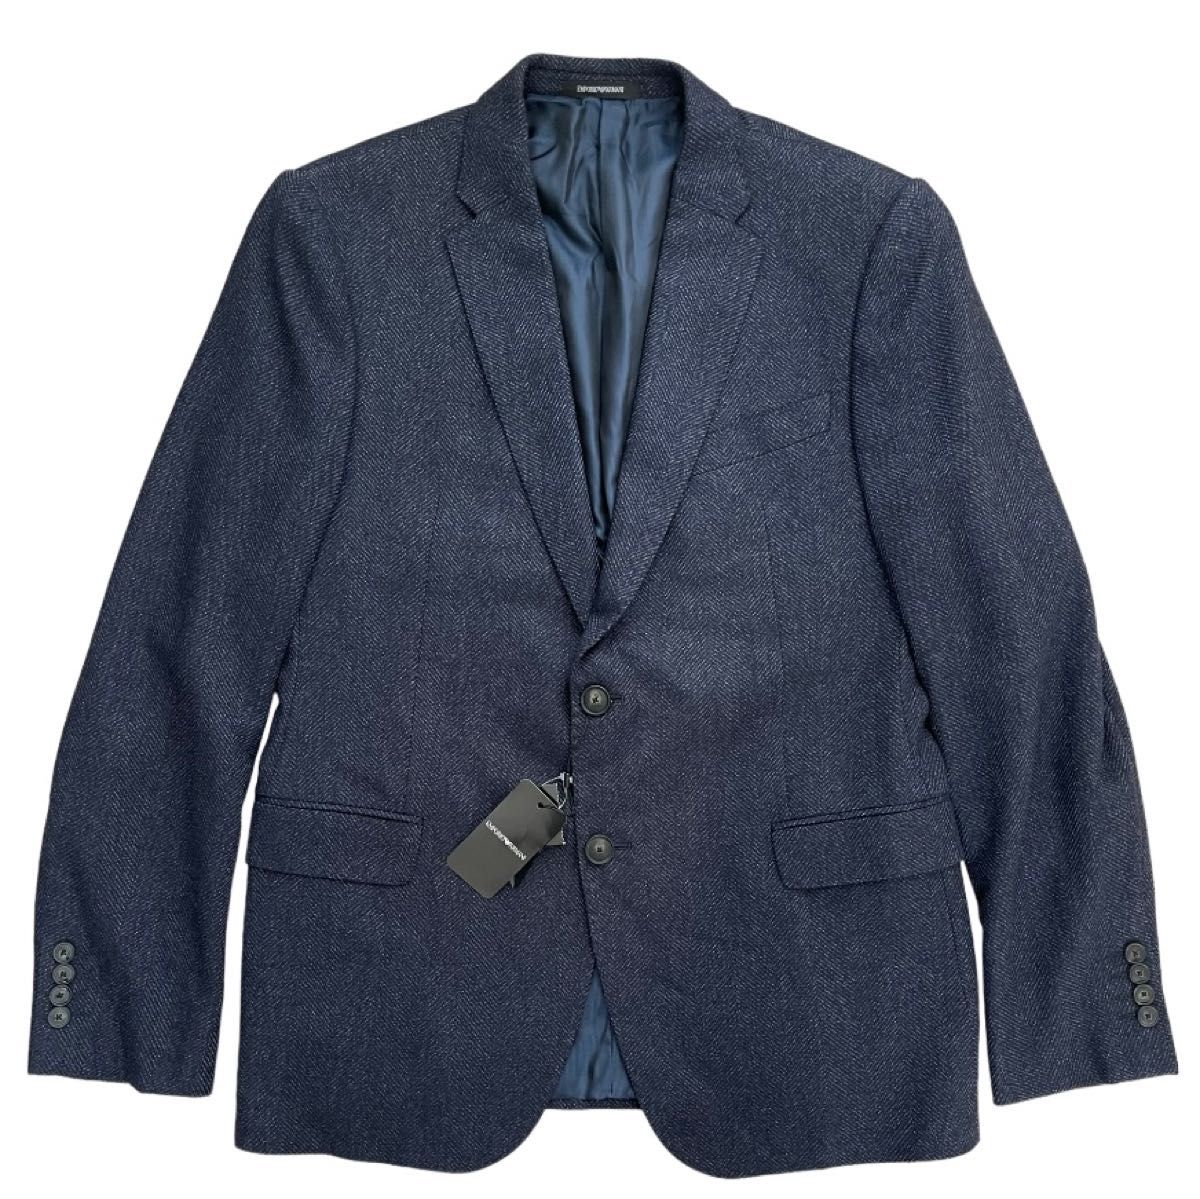 『ARMANI』 / アルマーニ ネイビー ブルー テーラード ジャケット シンプル Lサイズ 50 新品未使用品